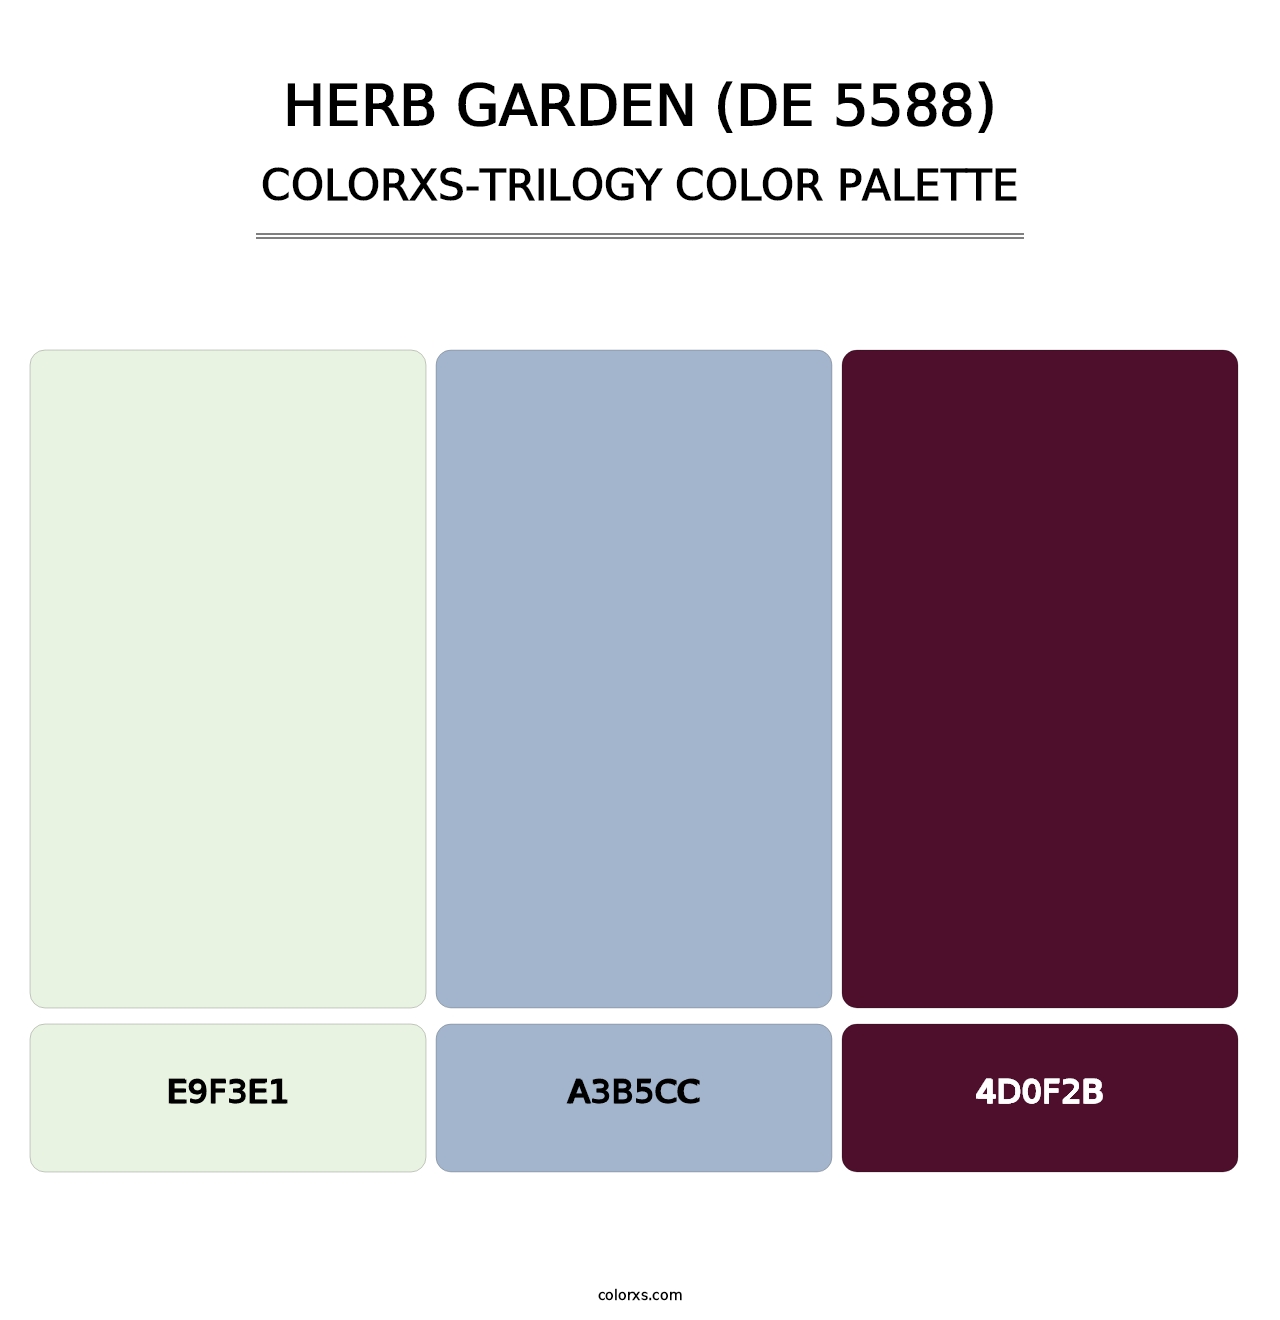 Herb Garden (DE 5588) - Colorxs Trilogy Palette